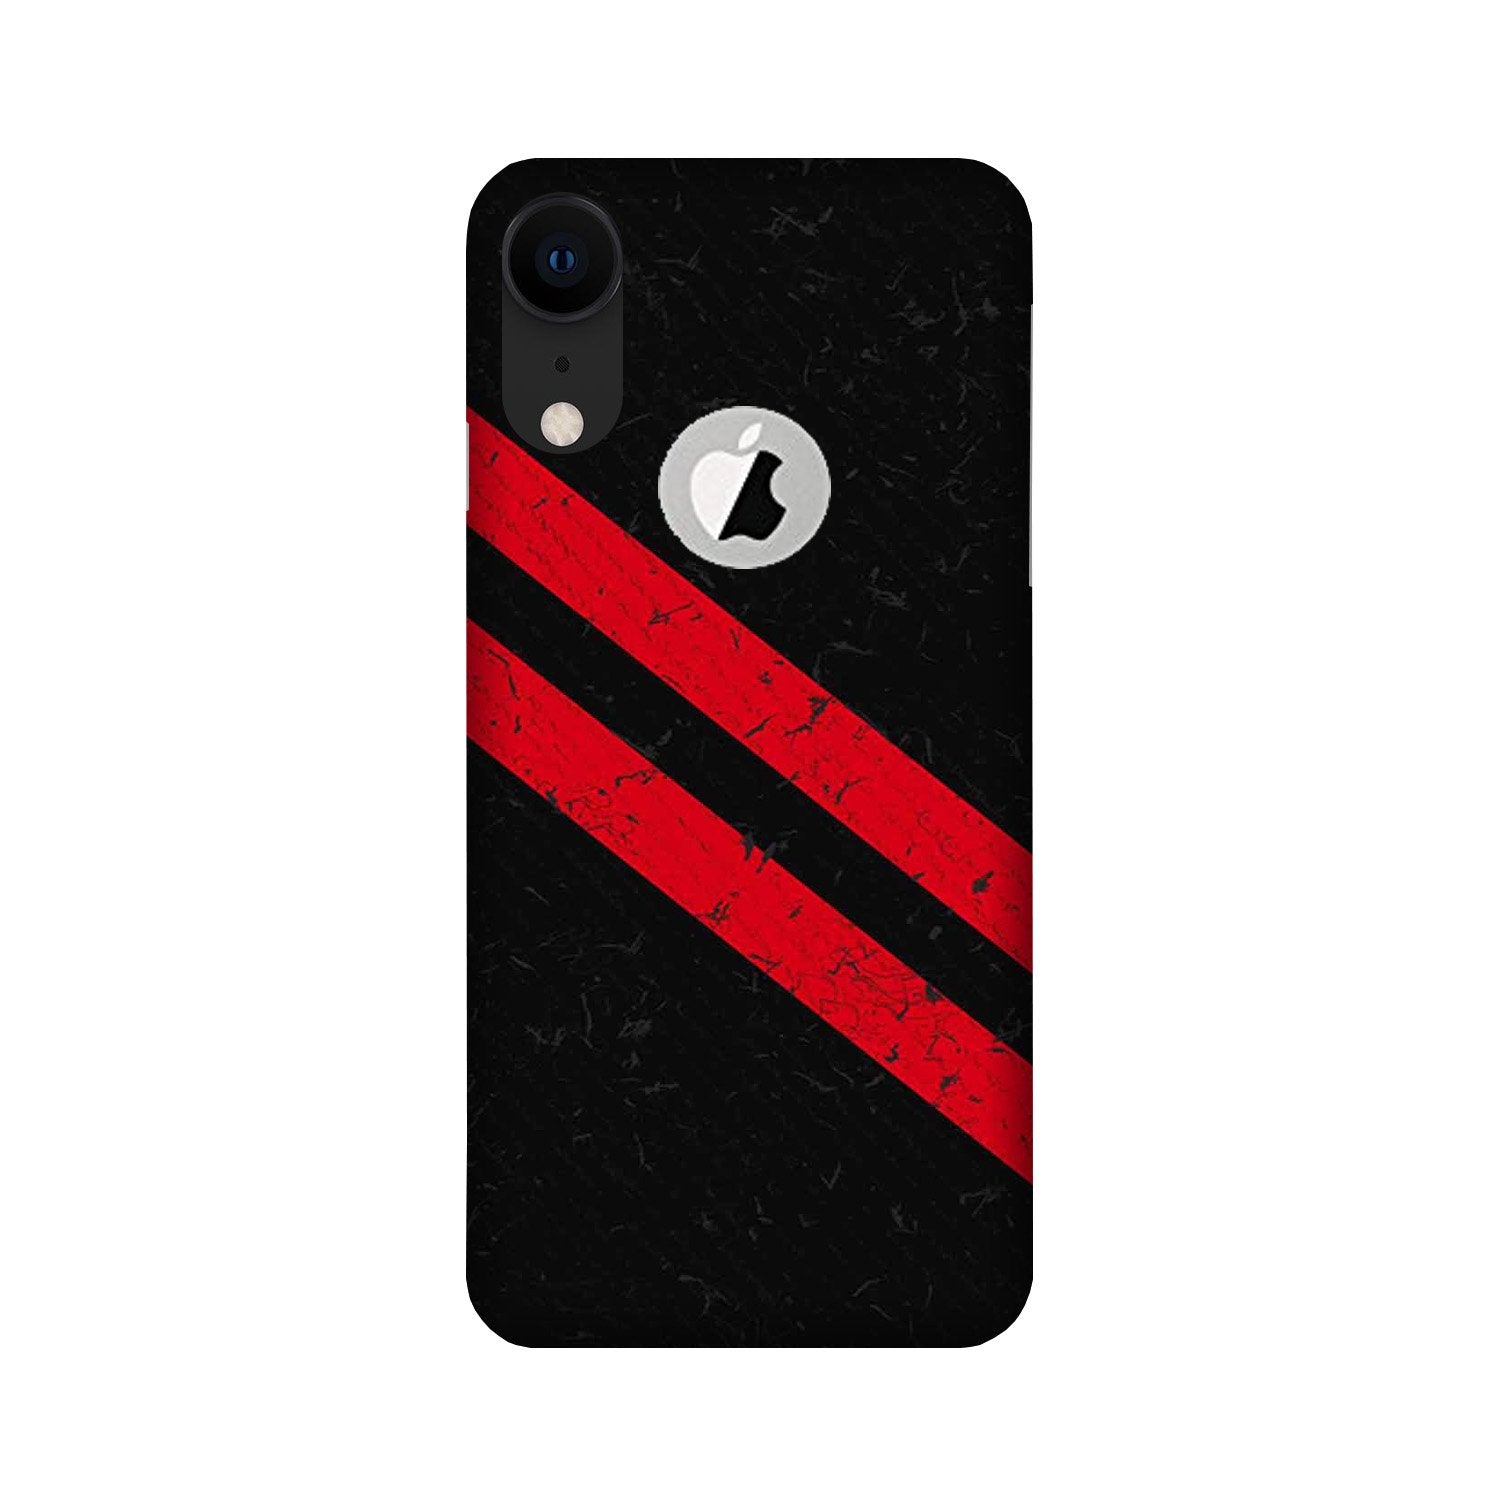 Black Red Pattern Mobile Back Case for iPhone Xr logo cut (Design - 373)